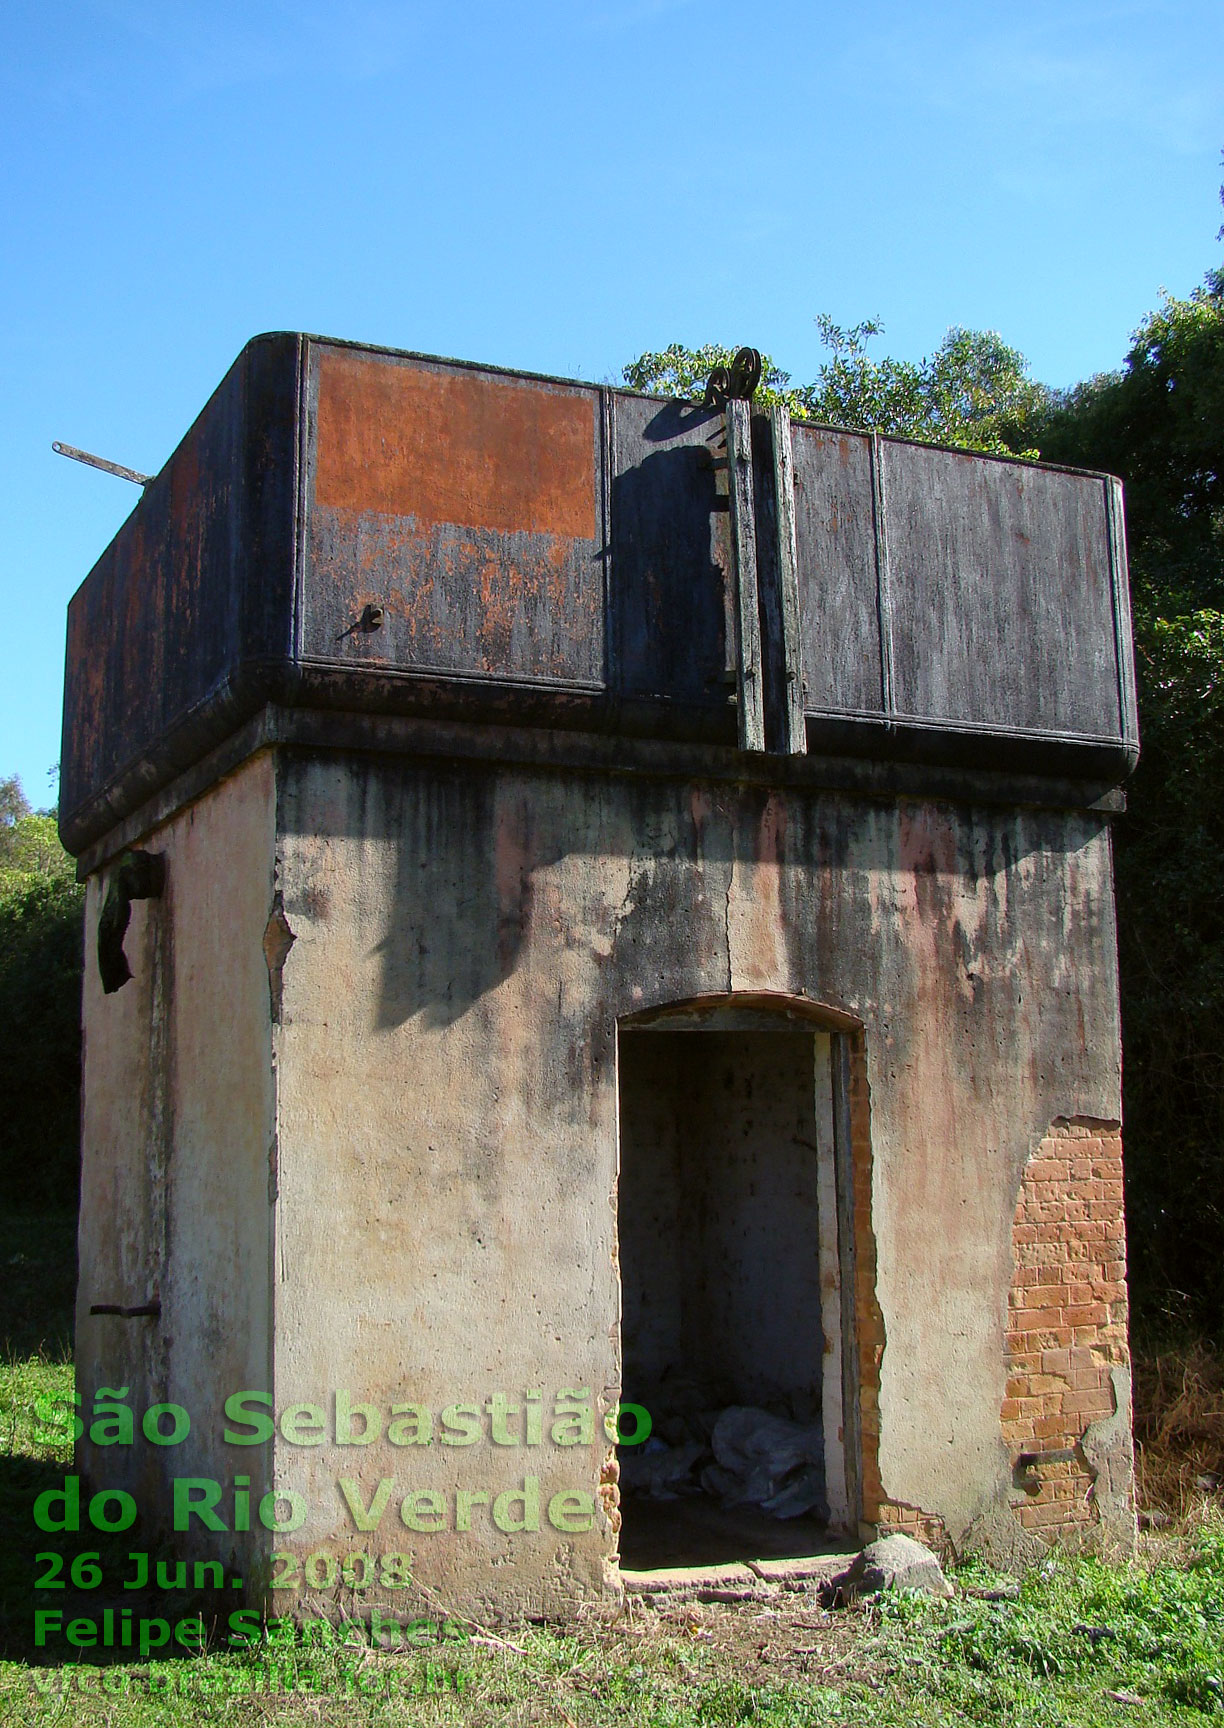 Caixa d'água da estação ferroviária de São Sebastião do Rio Verde em 2010